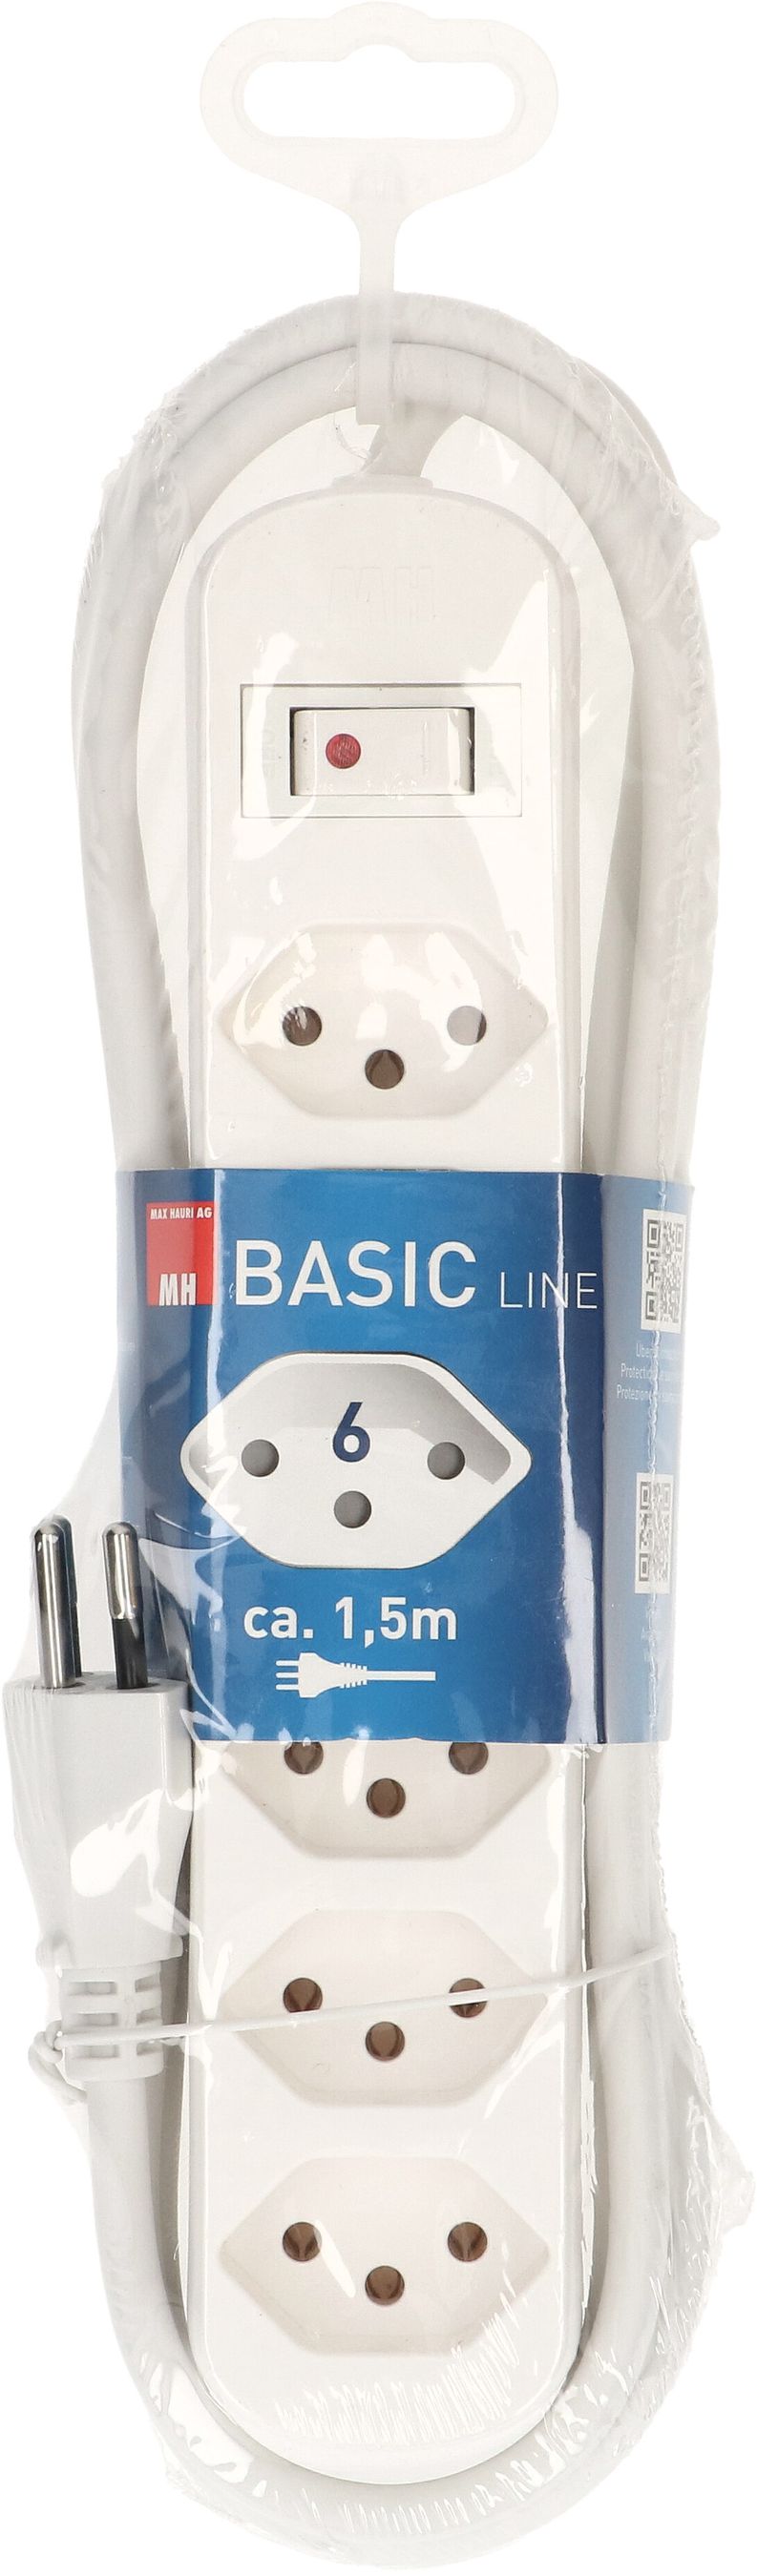 Multiple socket Basic Line 6x type 13